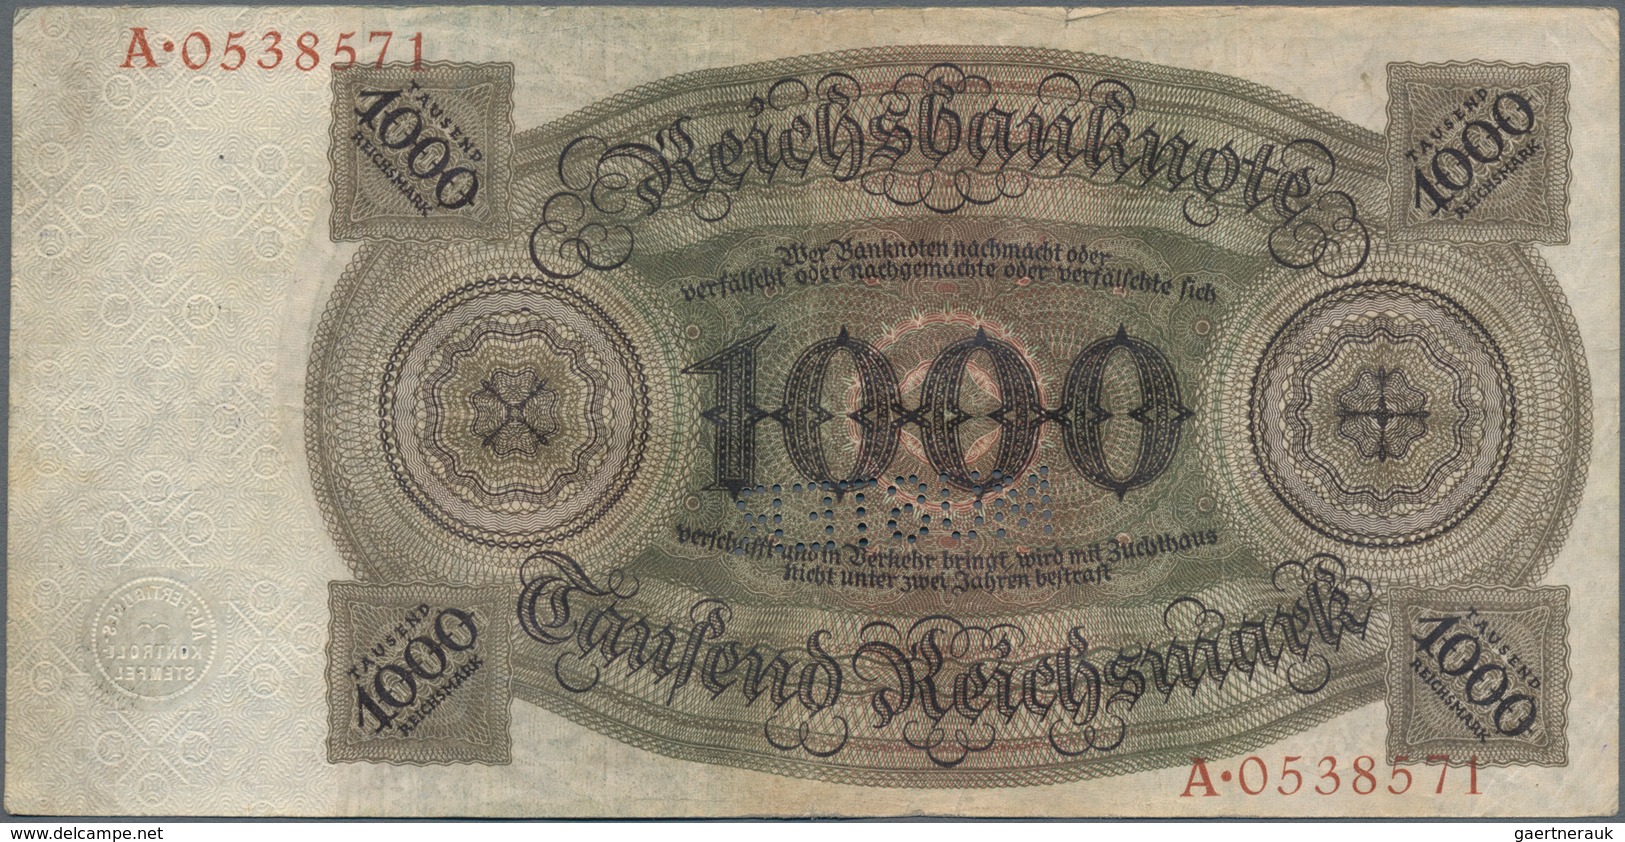 Deutschland - Deutsches Reich bis 1945: Lot mit 4 x 1000 Reichsmark Holbein Serie 1924, mit UDr./Ser